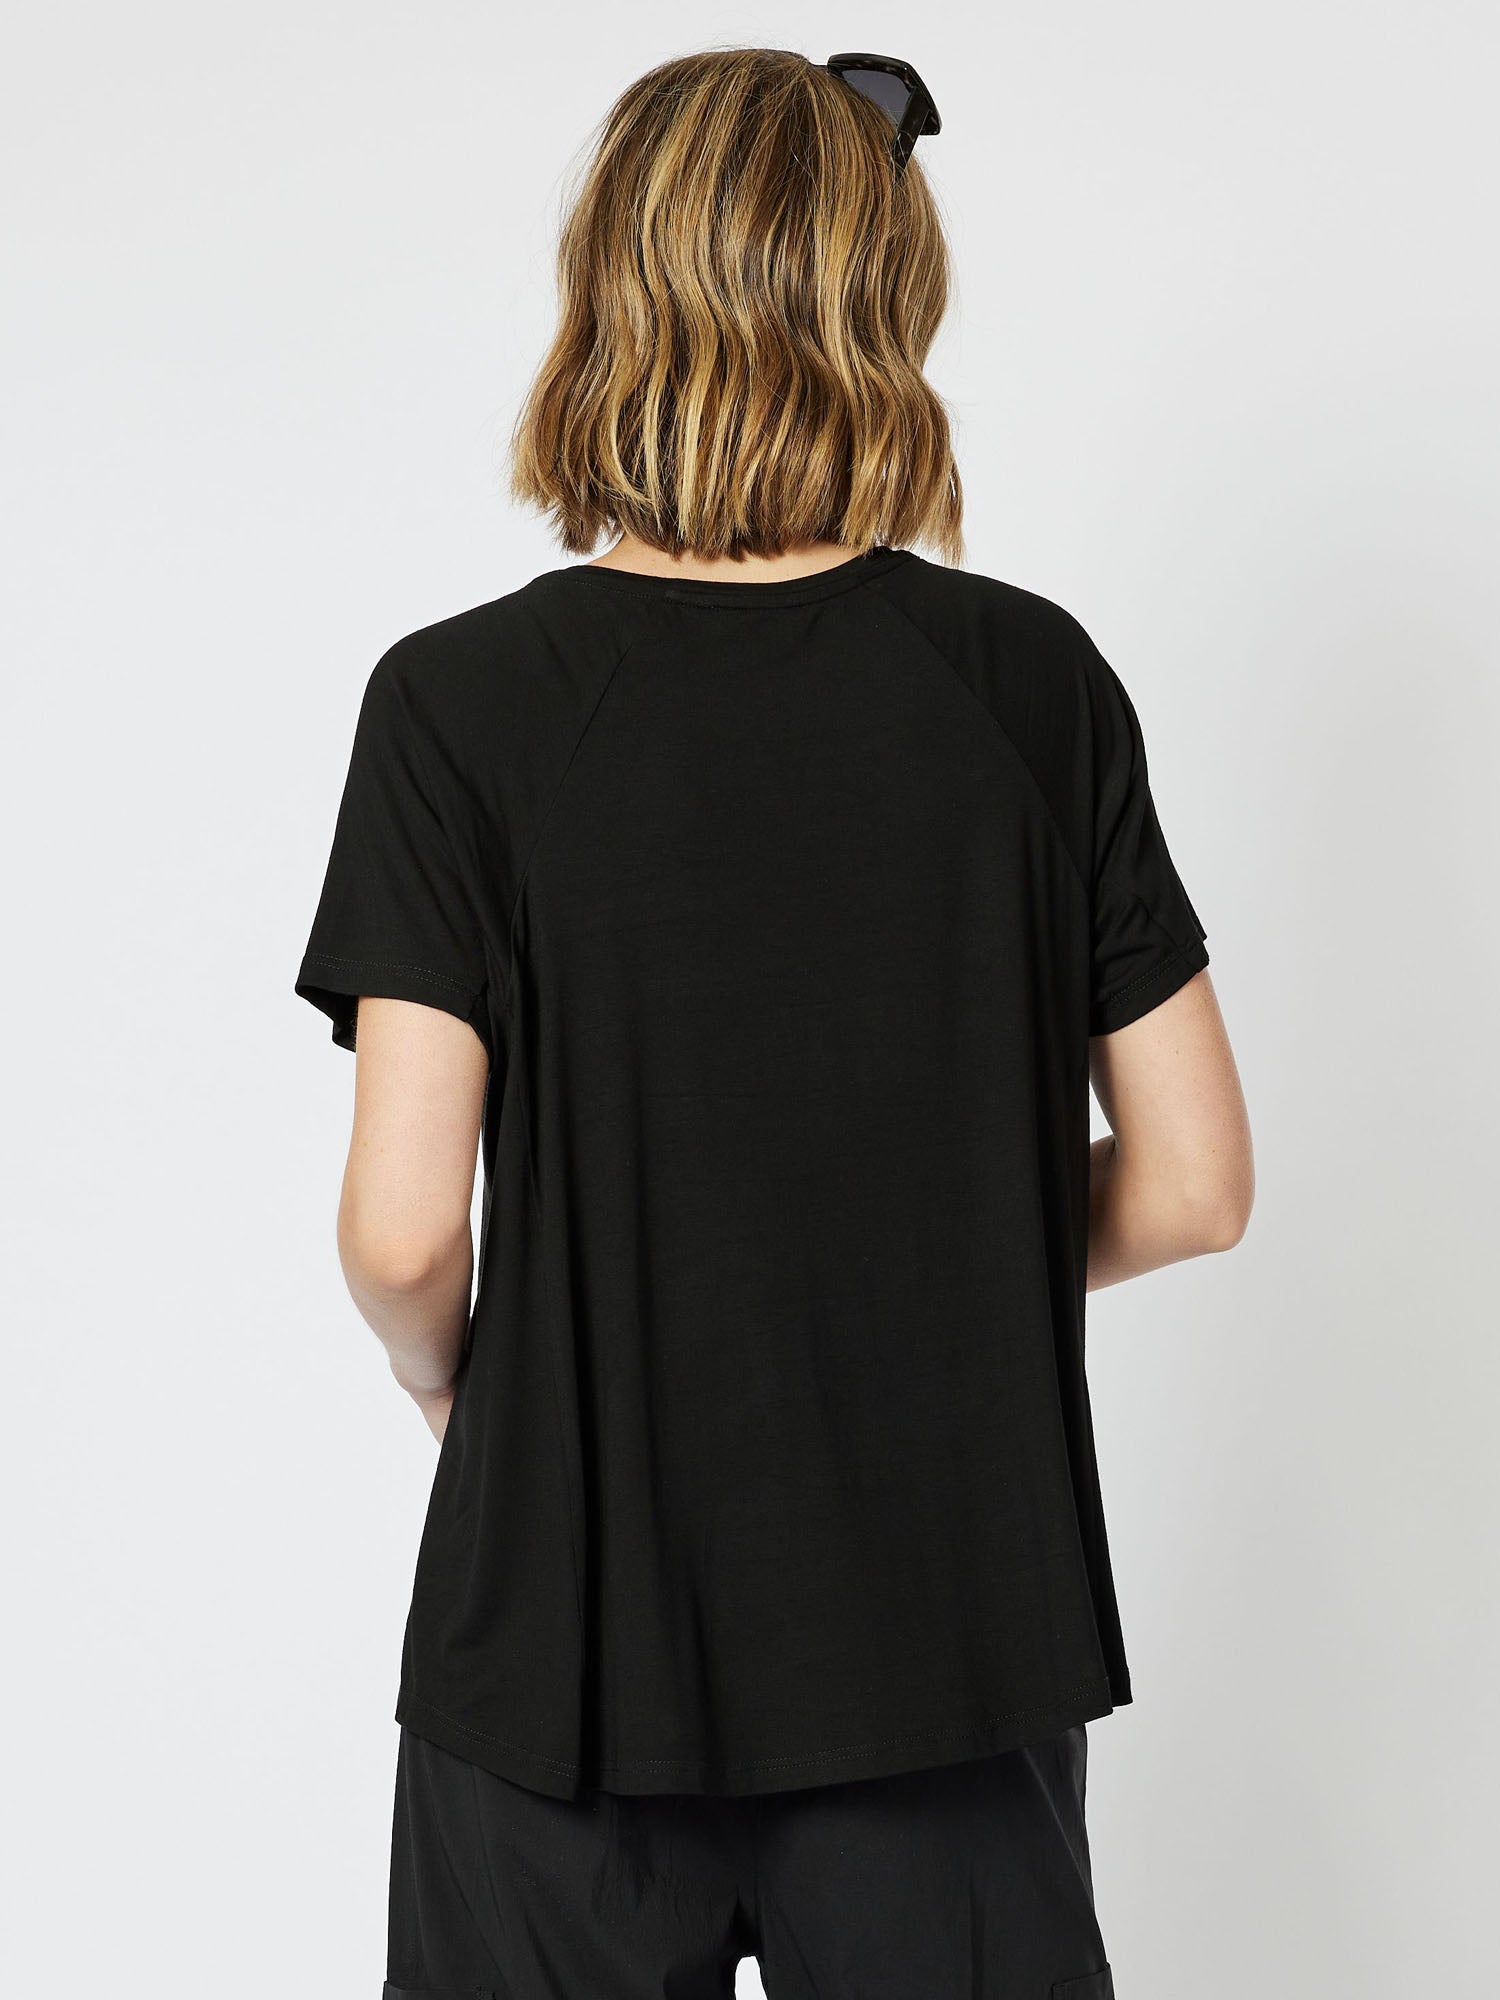 Sequin Patch T-Shirt - Black